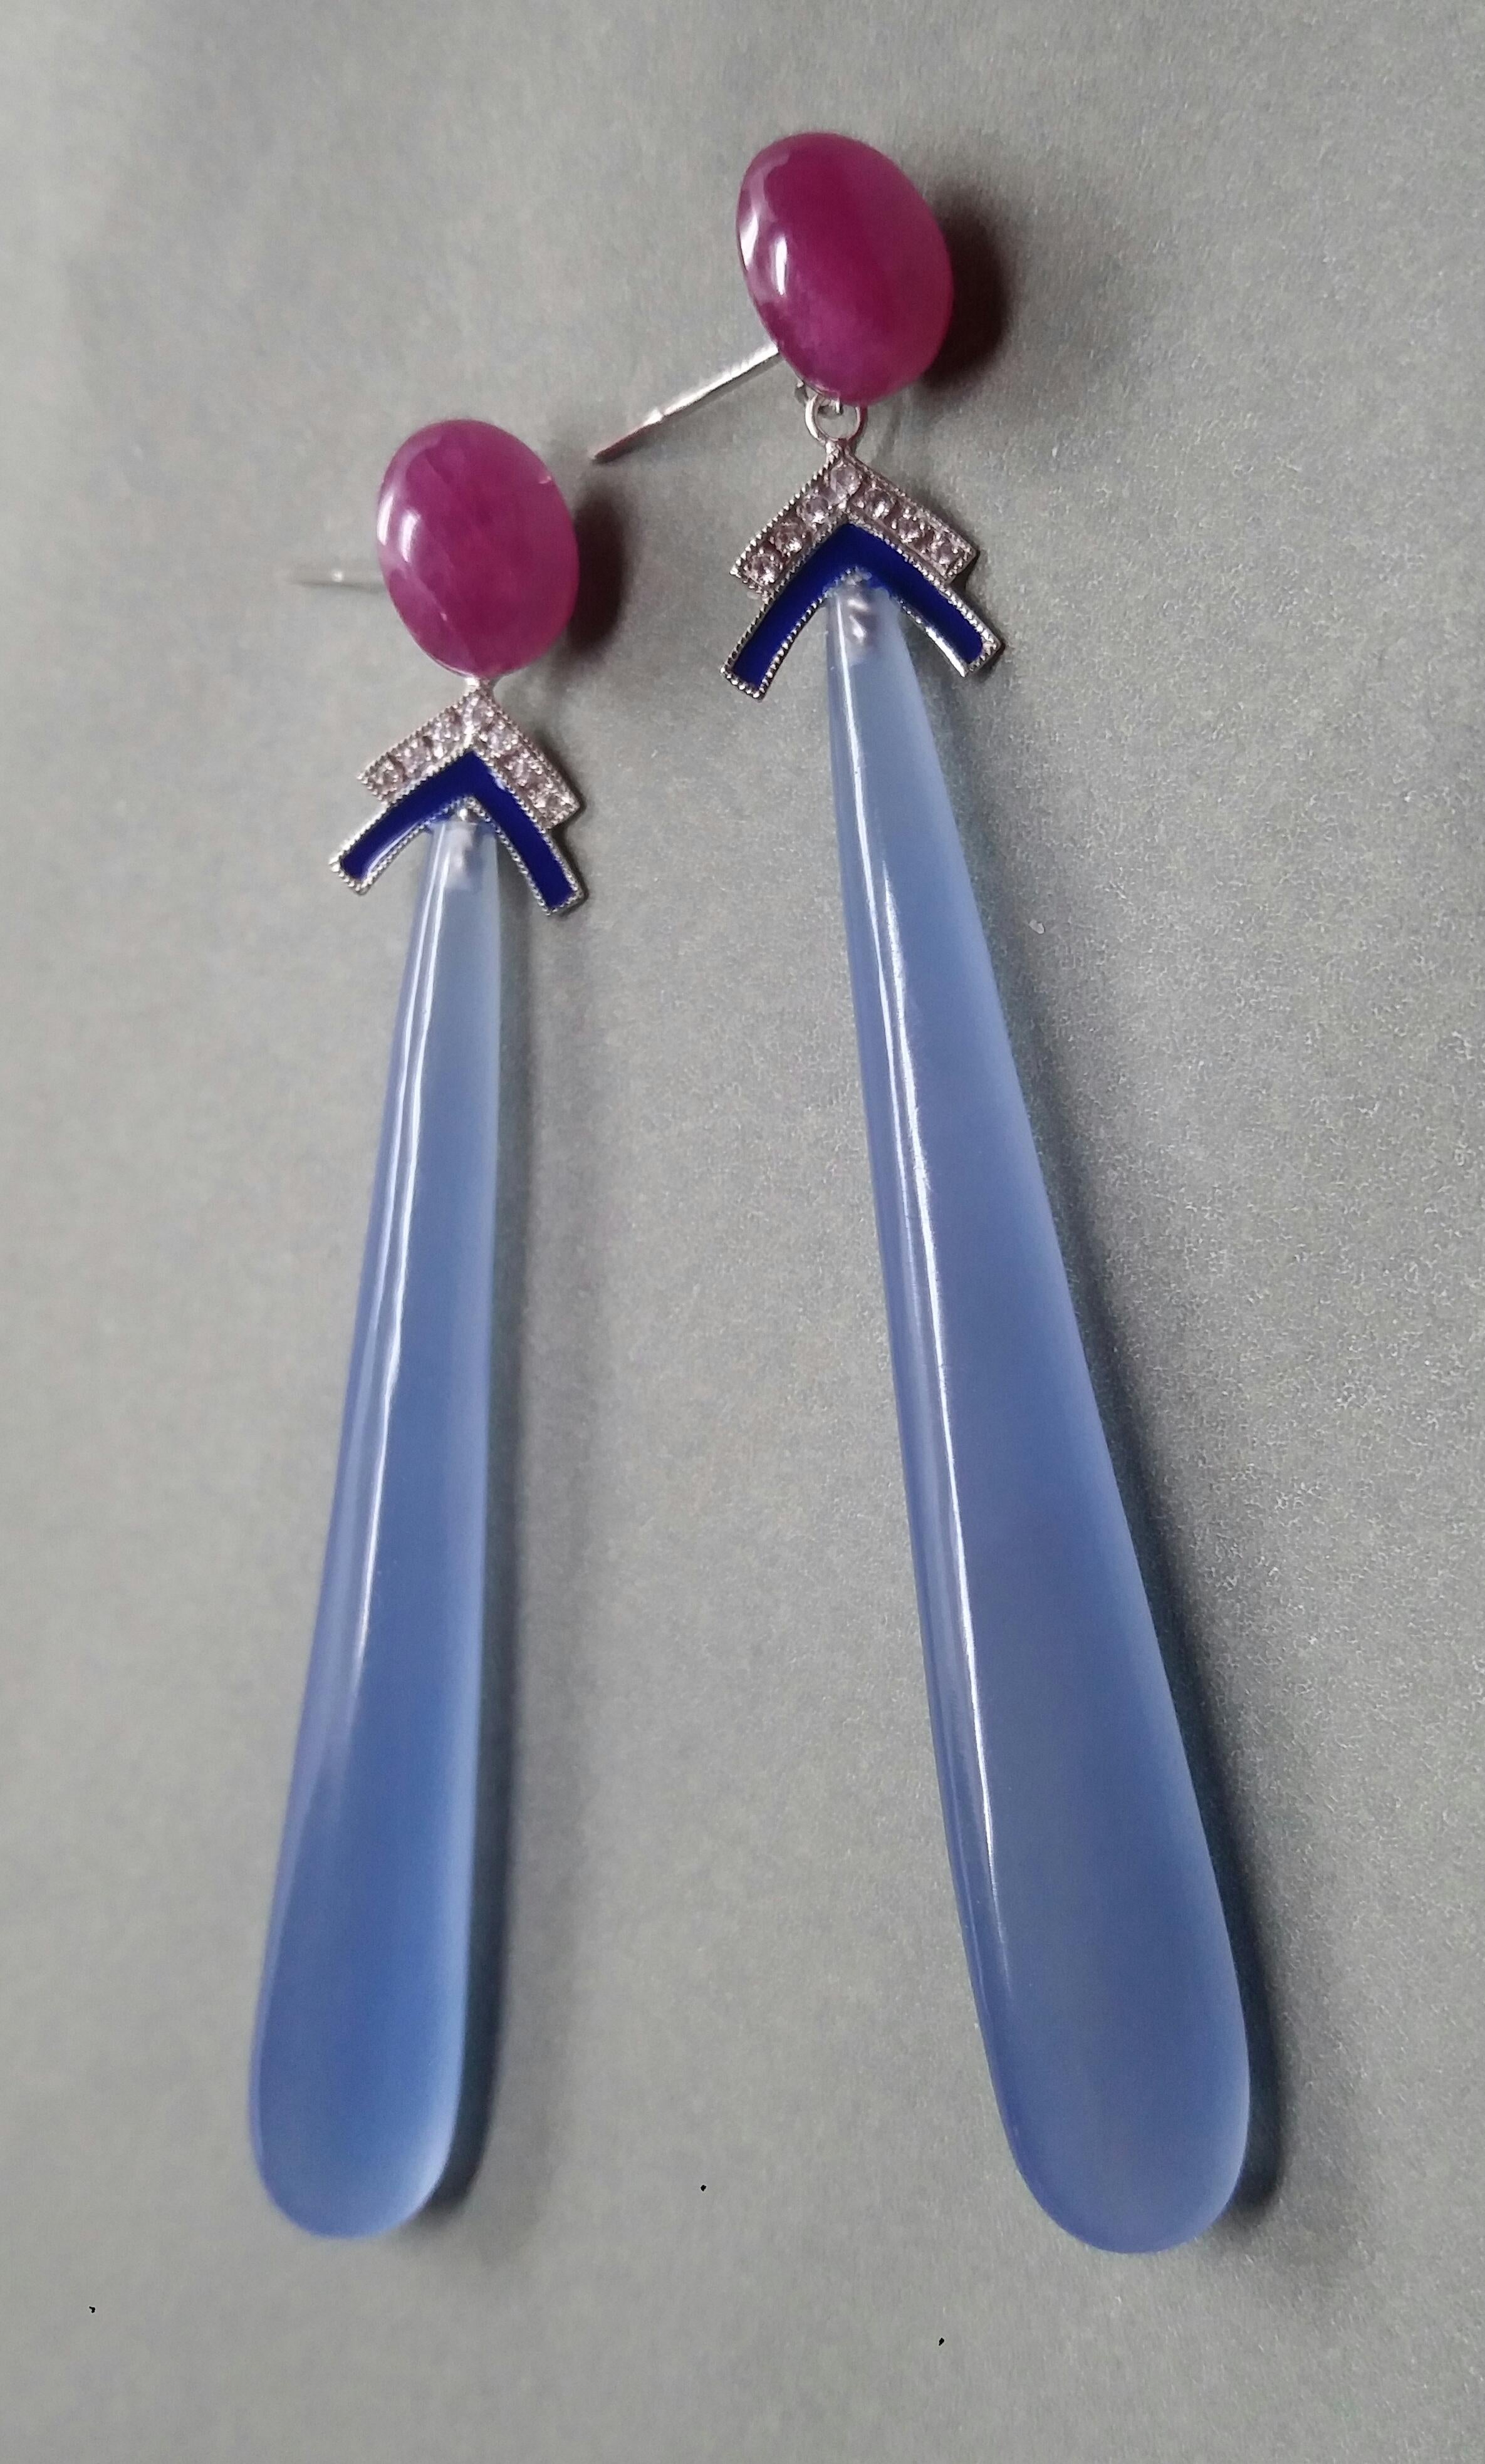 Ces boucles d'oreilles classiques de style Art déco comportent deux cabochons ovales en rubis, puis deux éléments en or blanc avec diamants et émail bleu  à laquelle sont suspendues 2 longues gouttes d'agate bleue

En 1978, notre atelier a démarré